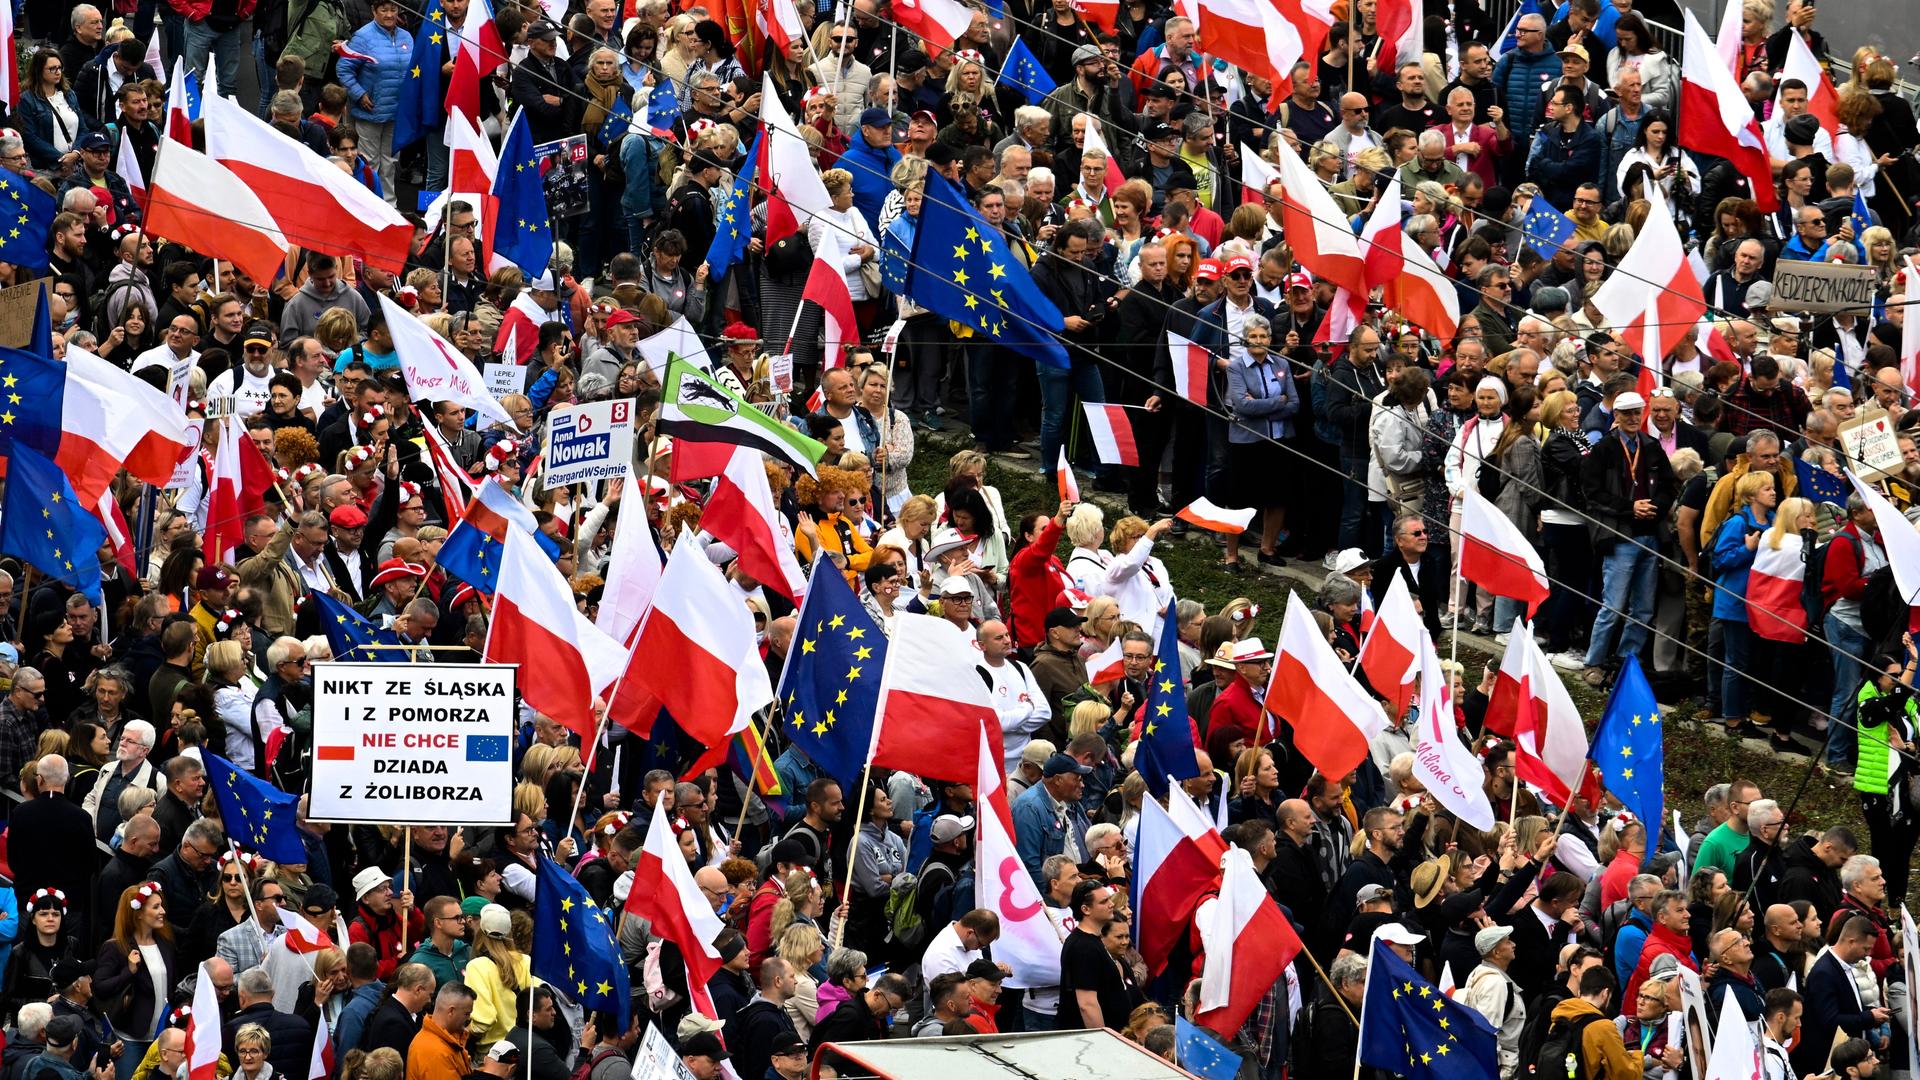 Warschau - Massendemonstration in Polen gegen PiS-Regierung